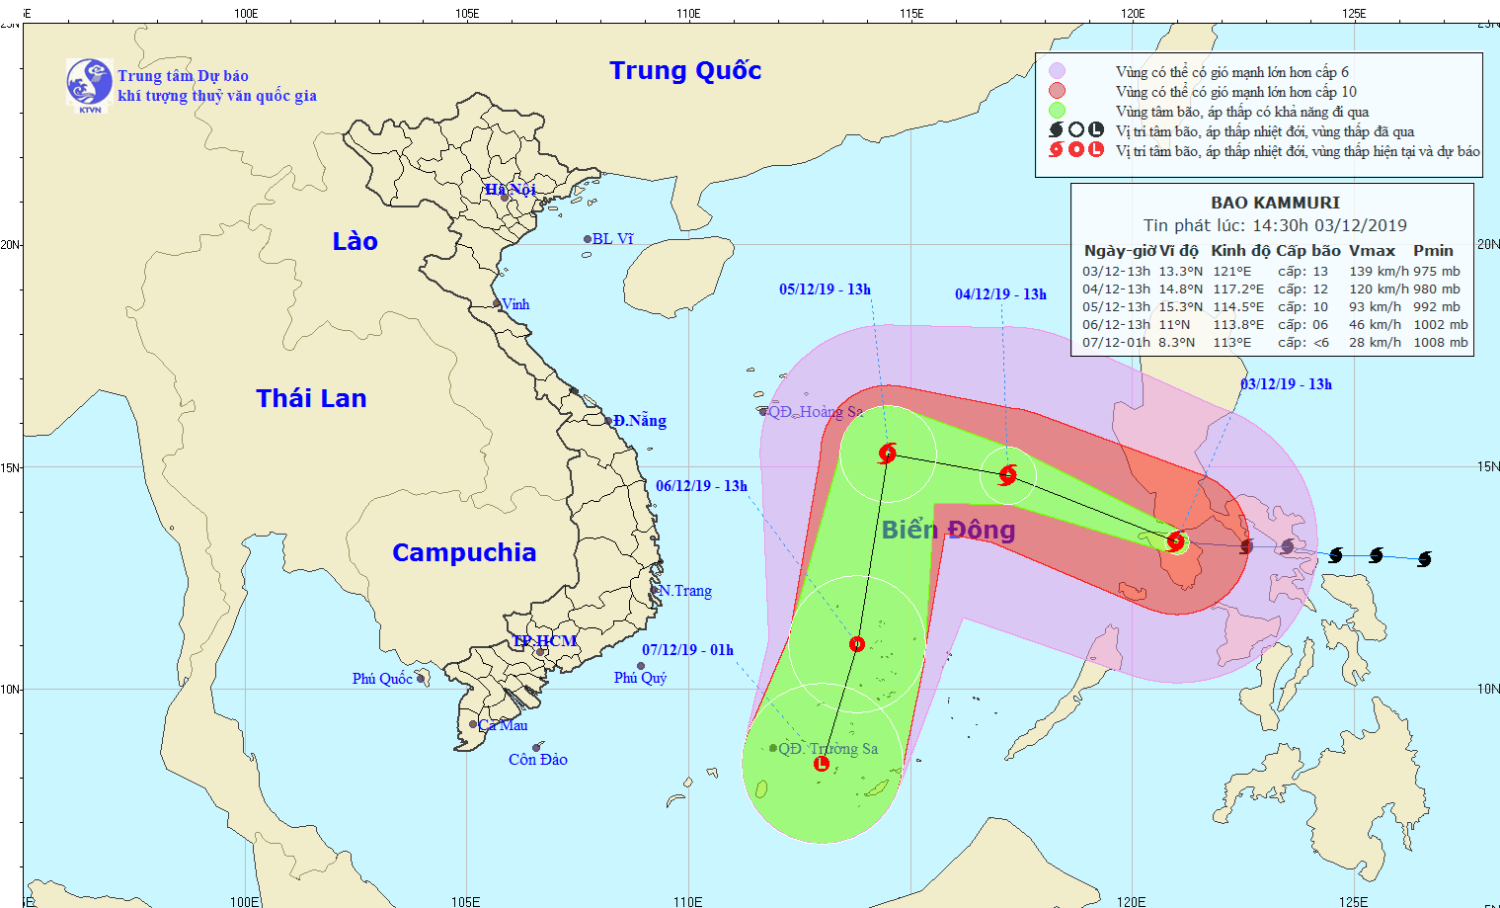 Tin bão gần Biển Đông - cơn bão KAMMURI (14h30 ngày 03/12)